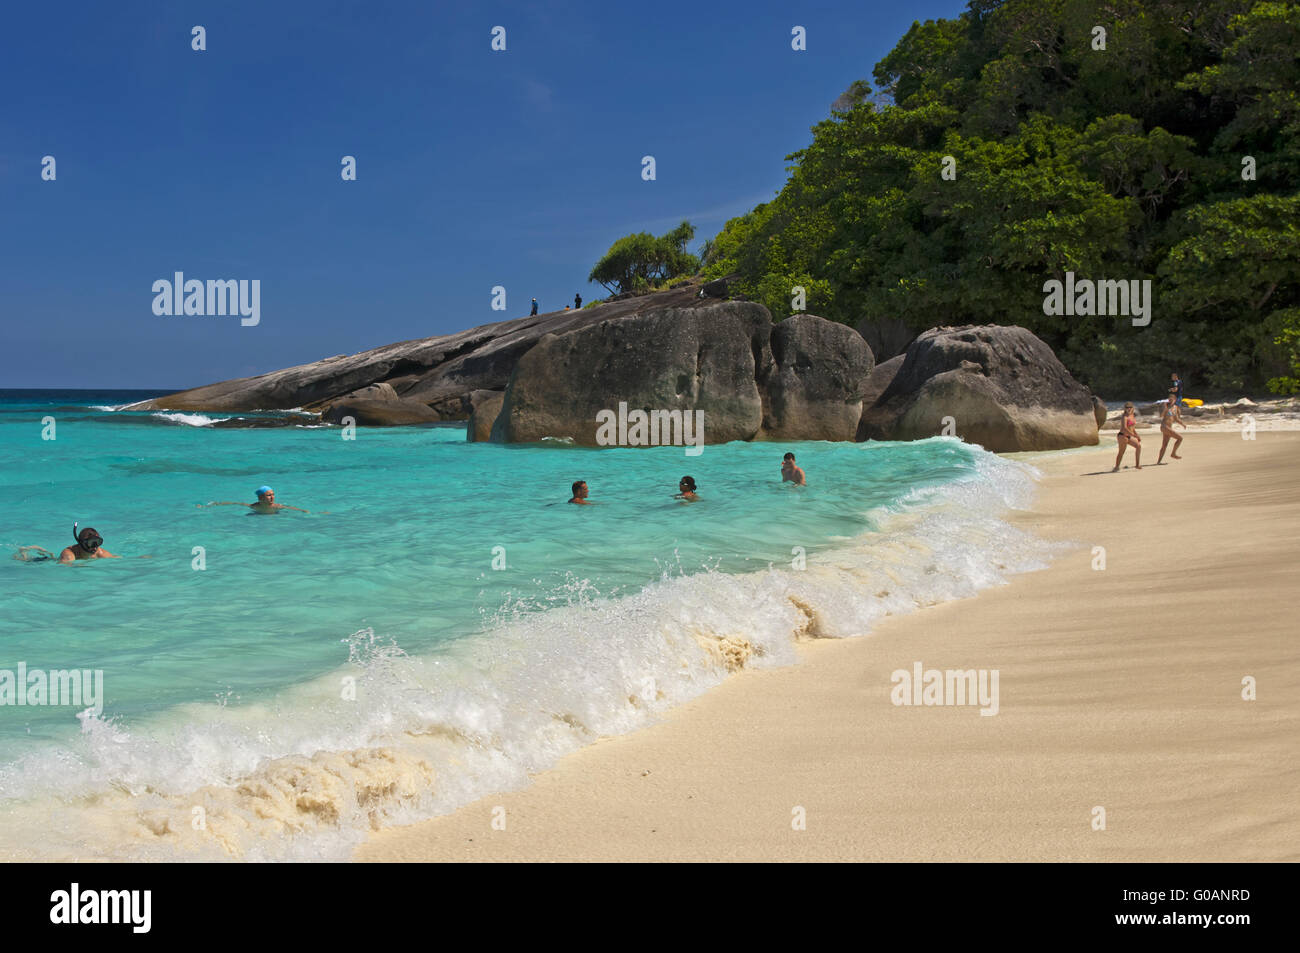 Sandy beach on the Similan Islands, Thailand Stock Photo